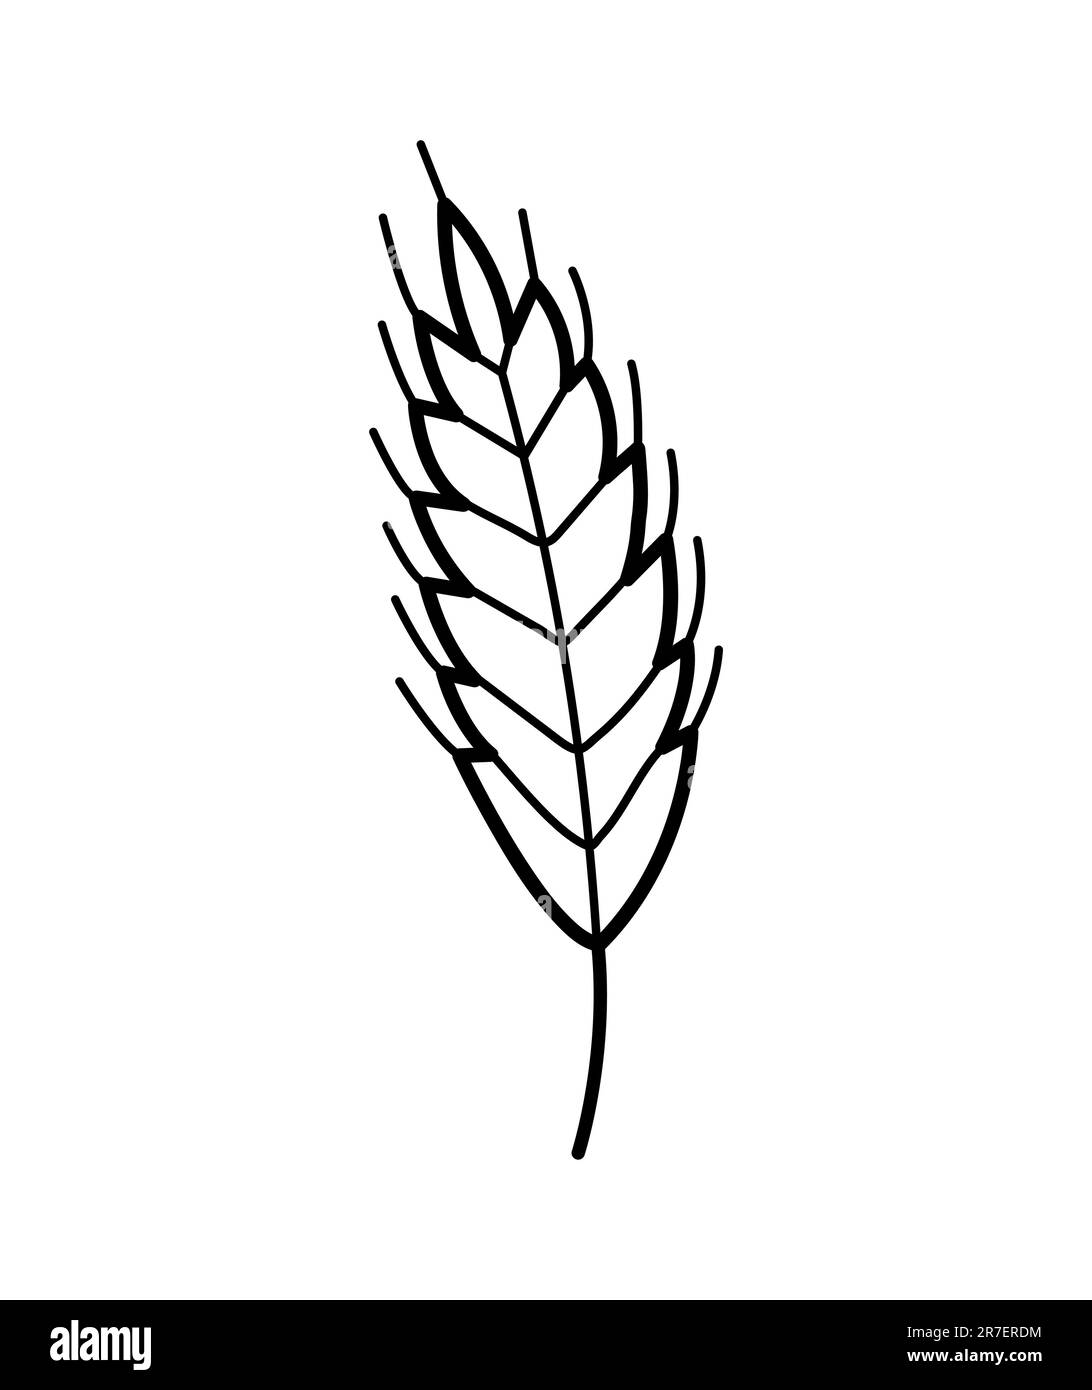 Weizenstacheln. Handgezeichnetes Symbol von Hafer, Roggen, Gerste. Isolierte Vektordarstellung im Doodle-Linienstil. Stock Vektor